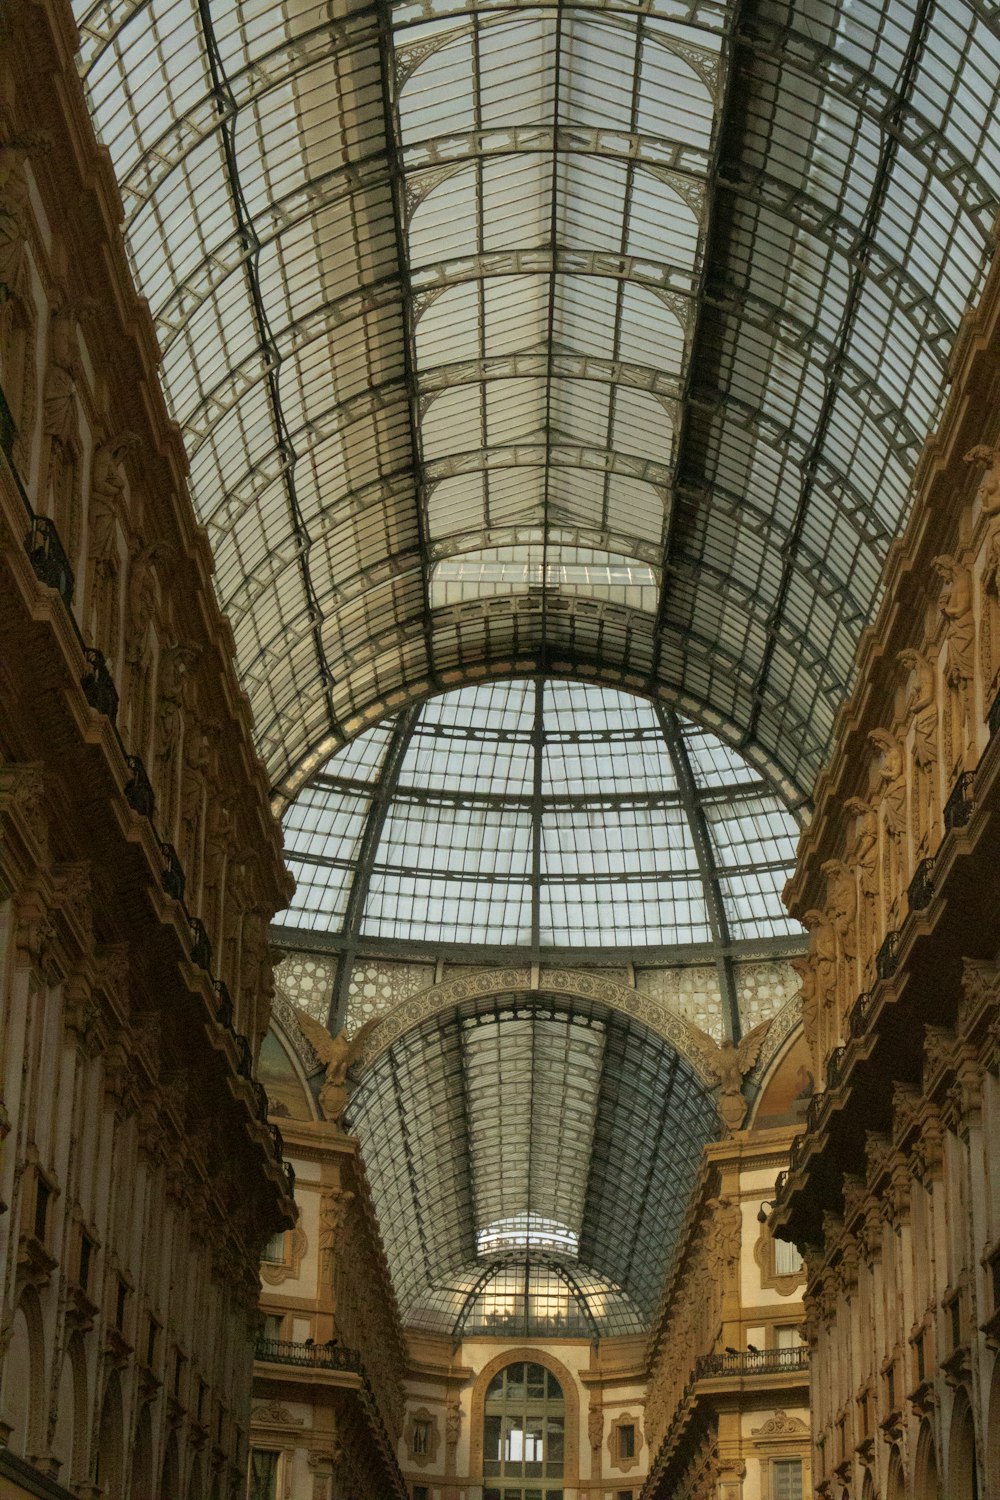 Un grande edificio con soffitto di vetro foto – Galleria Vittorio Emanuele  II Immagine gratuita su Unsplash